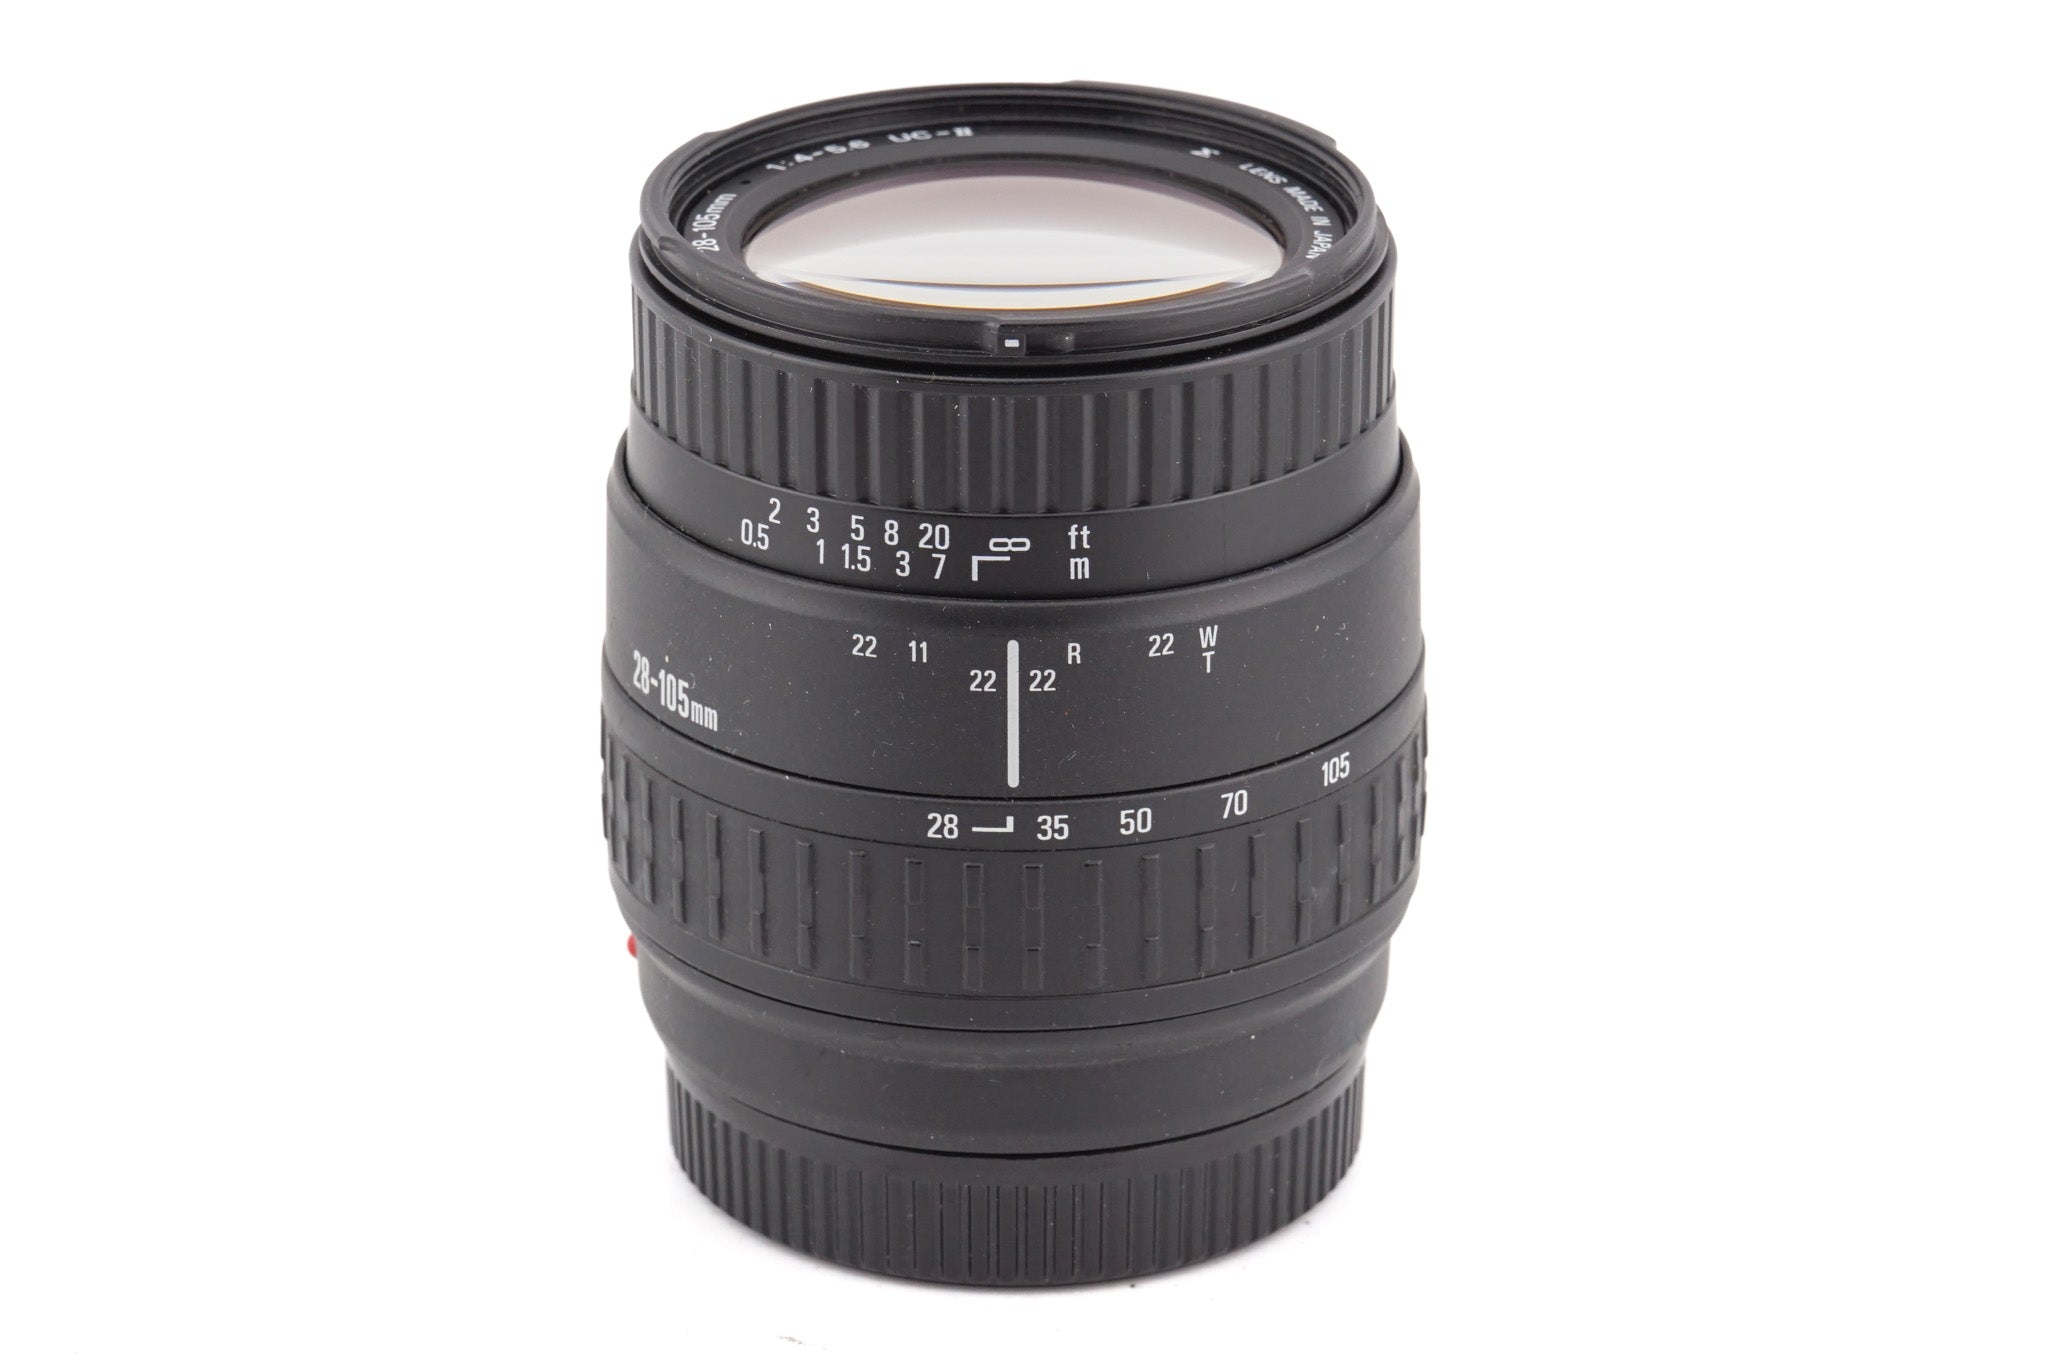 Sigma 28-105mm f4-5.6 UC-II - Lens